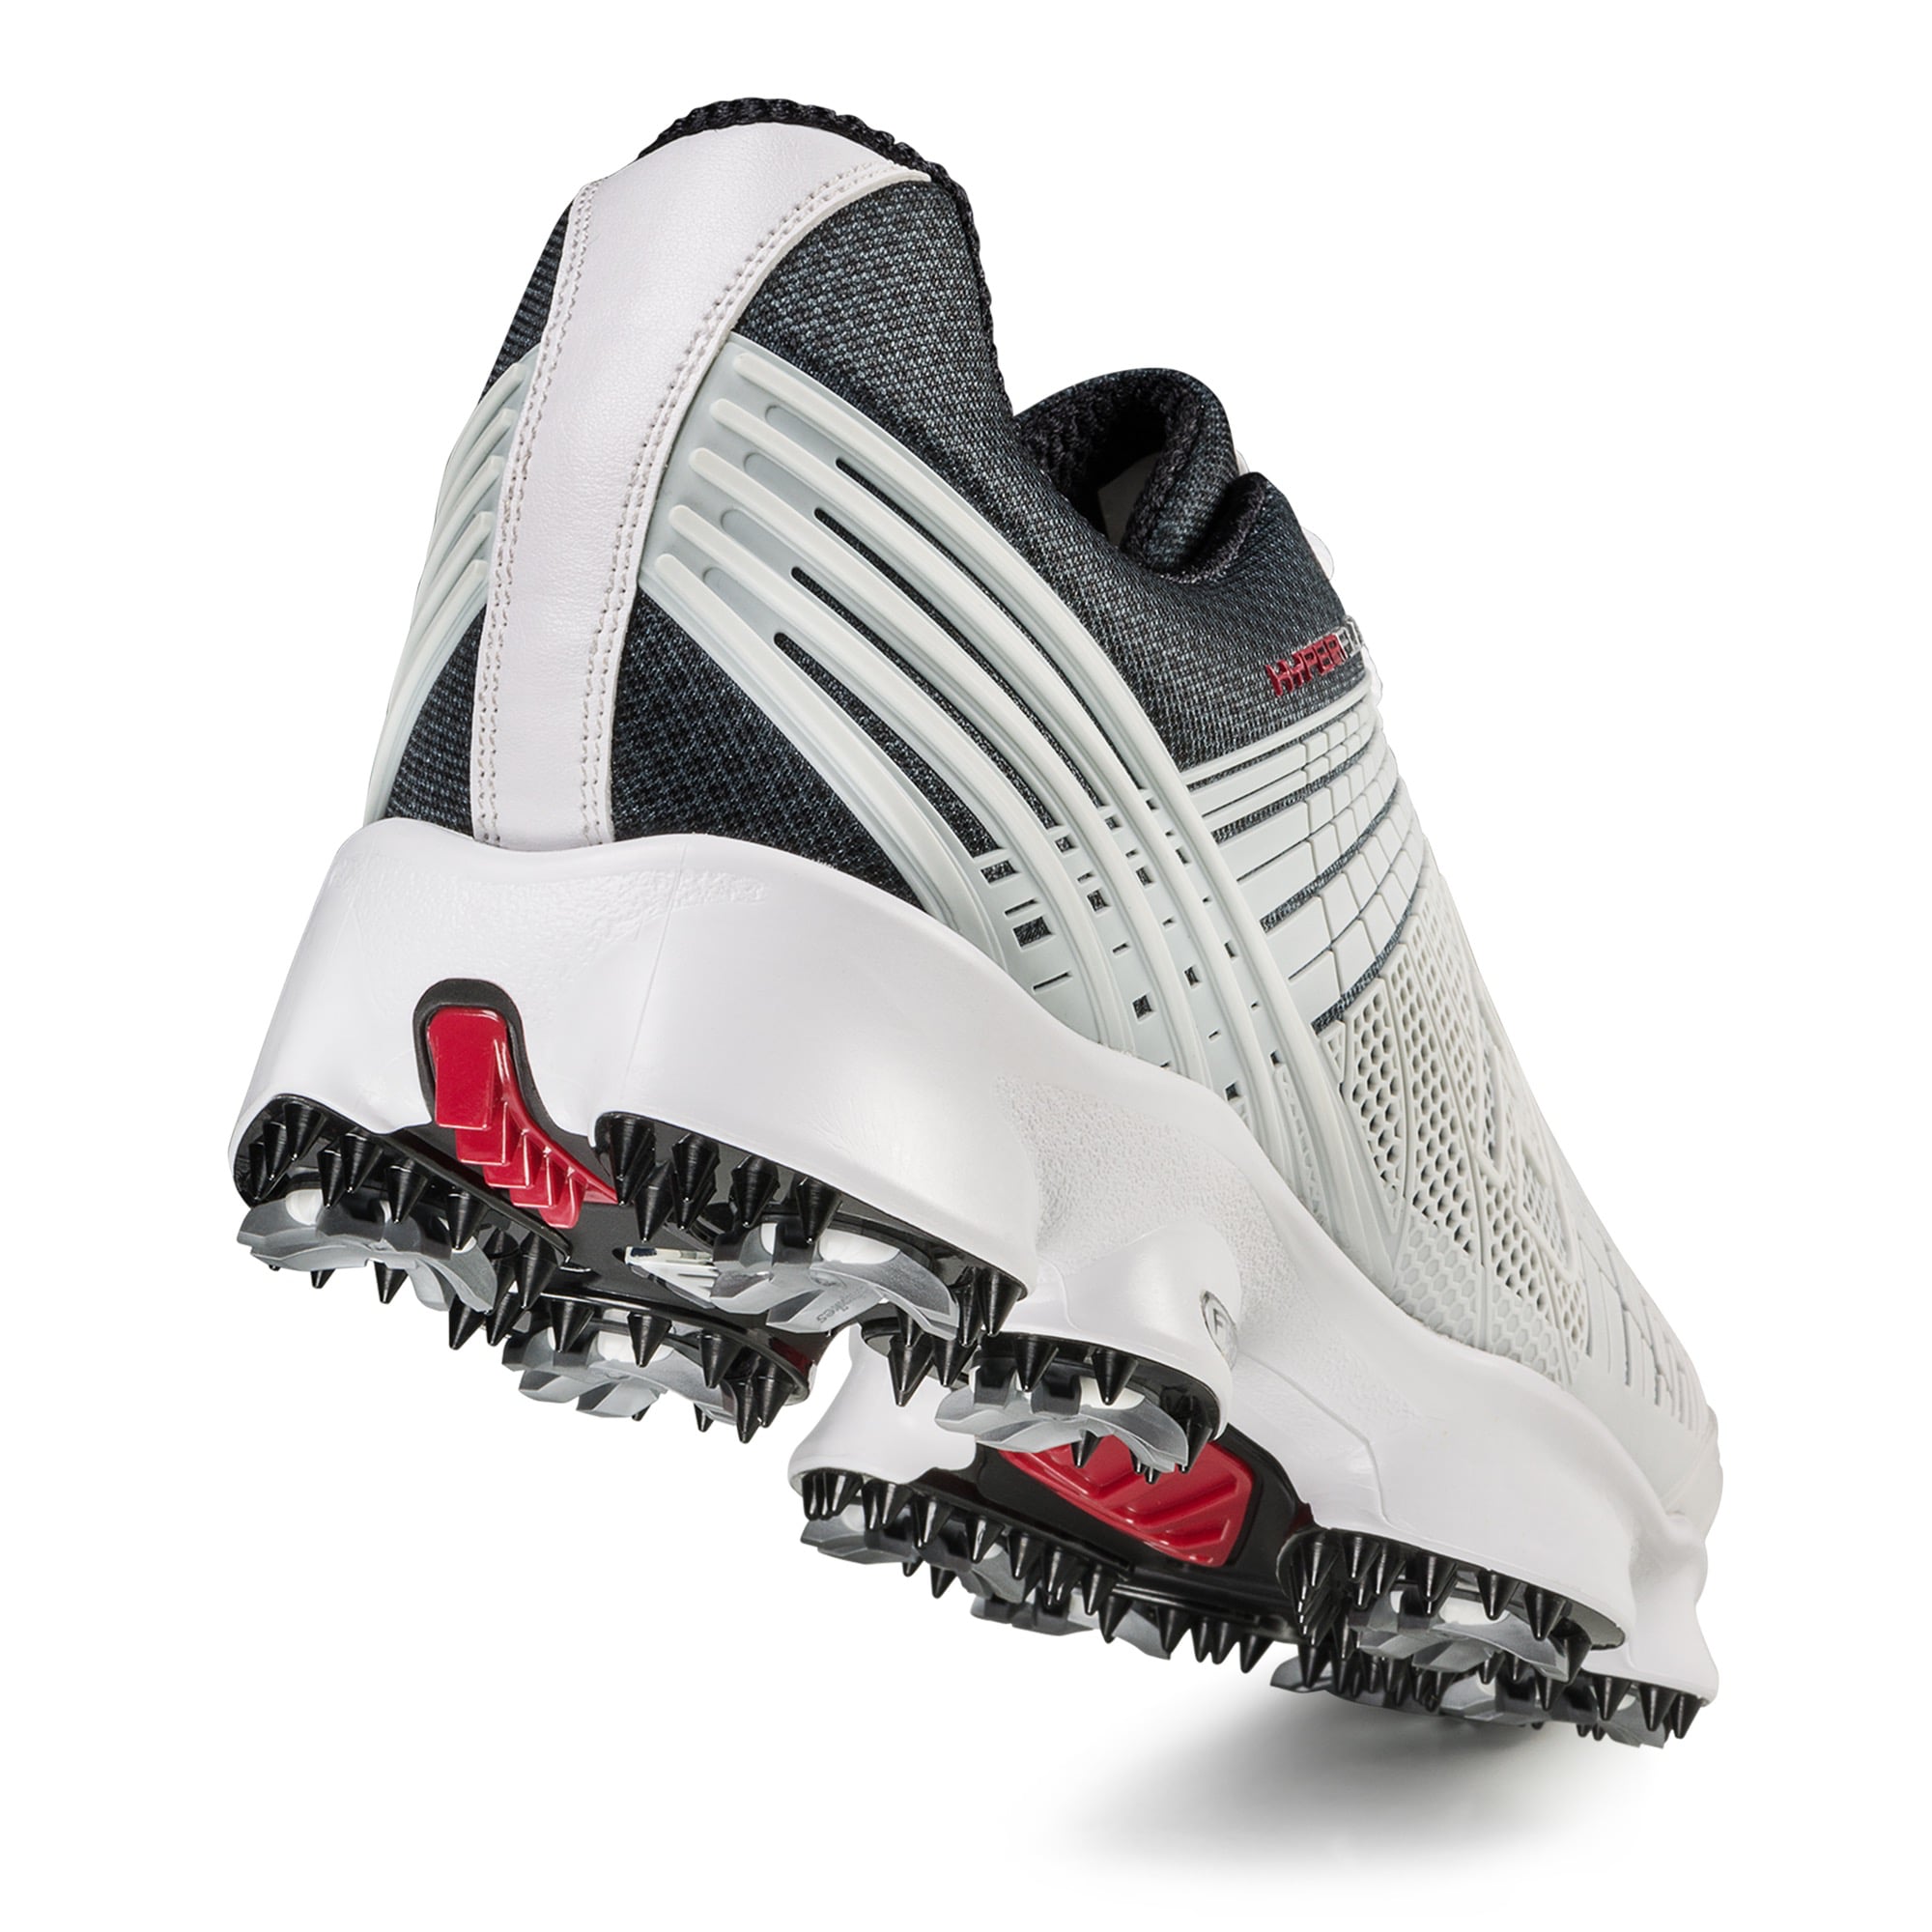 hyperflex 2 golf shoes